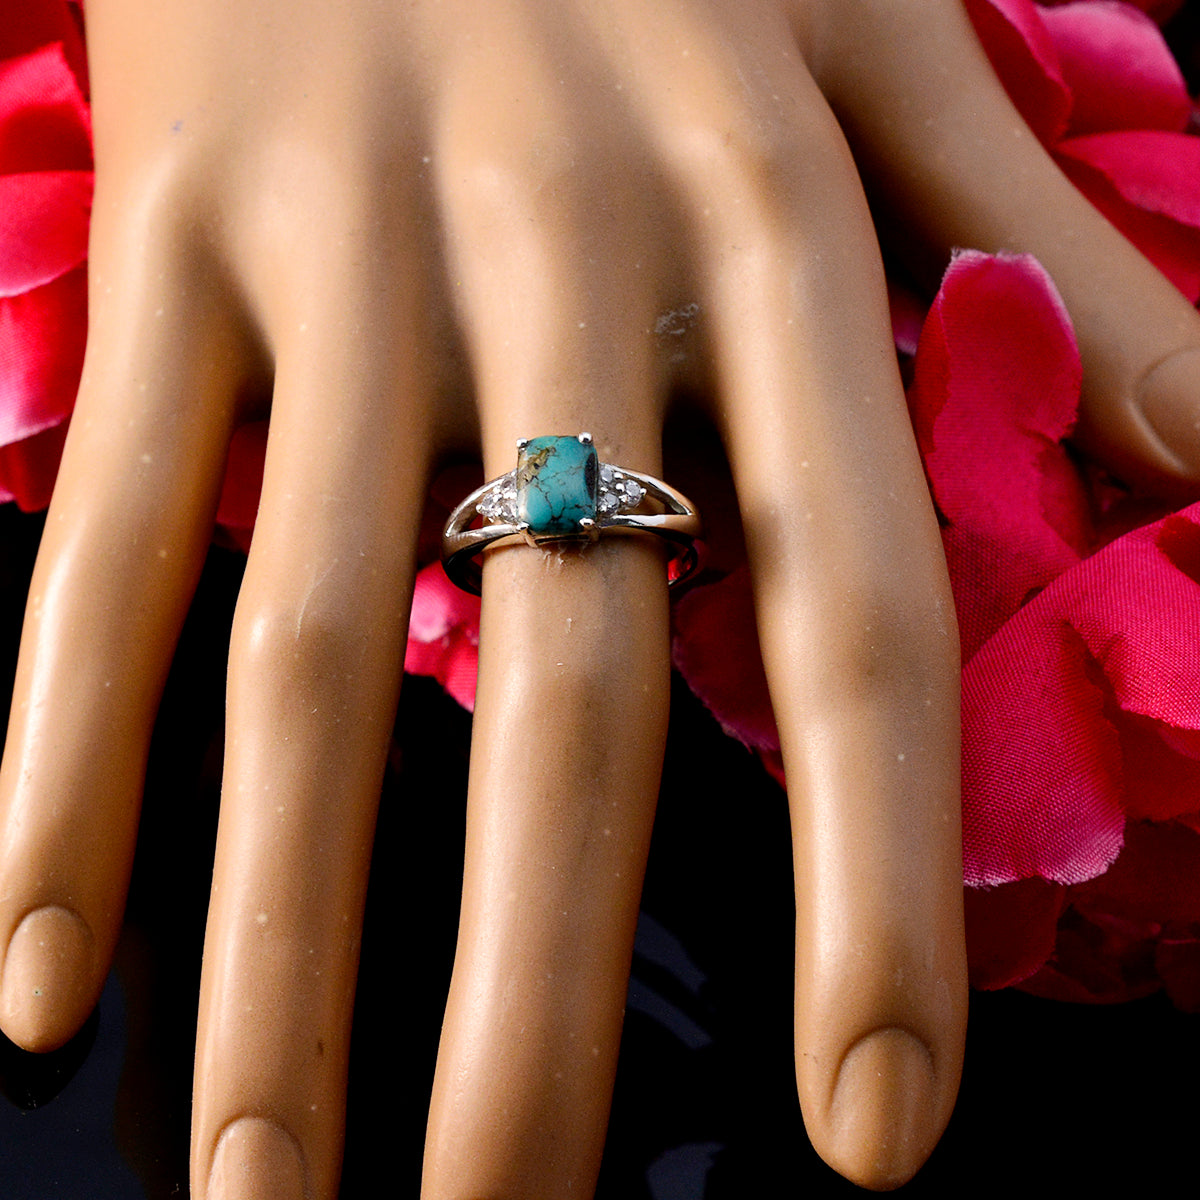 великолепные серебряные кольца с бирюзой и драгоценными камнями, украшения в стиле квиллинг